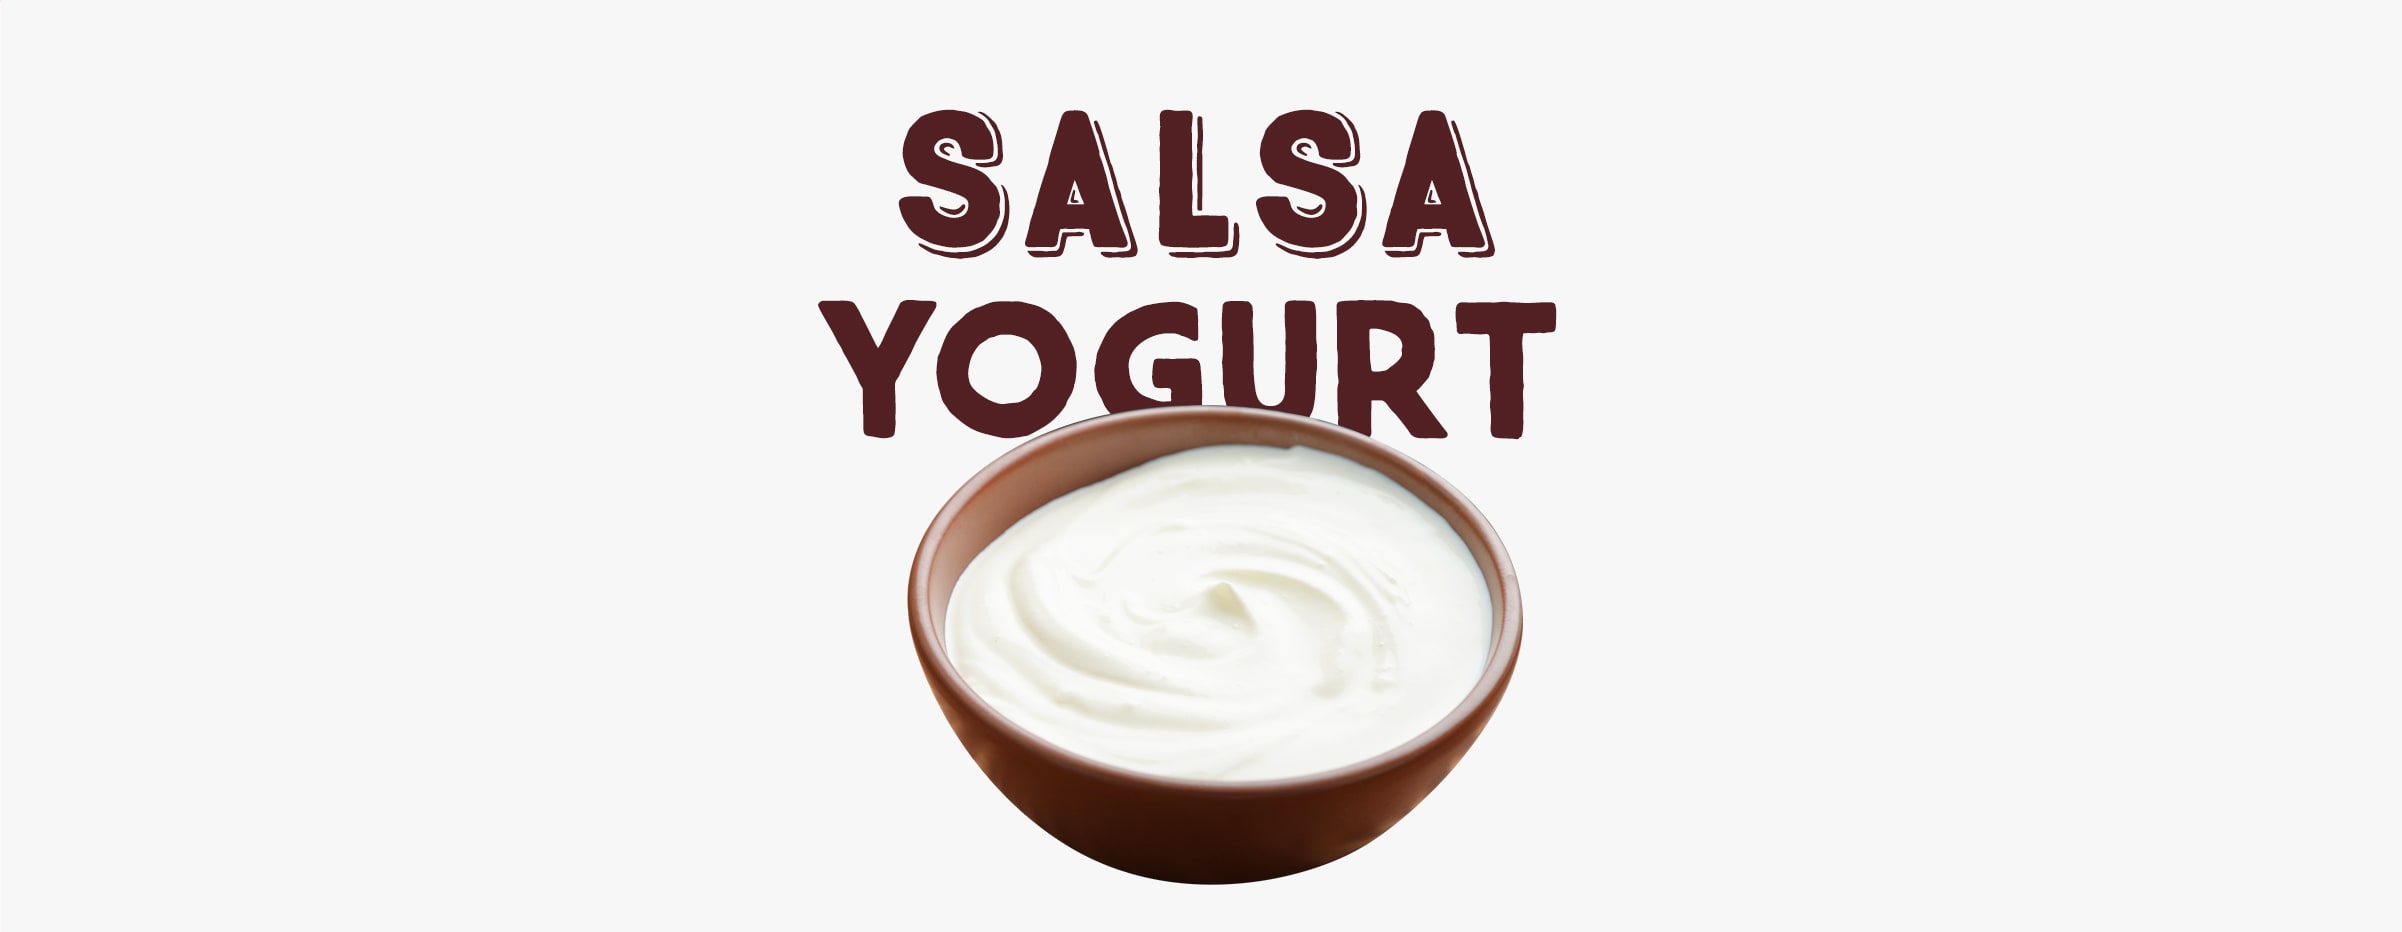 Salsa yogurt